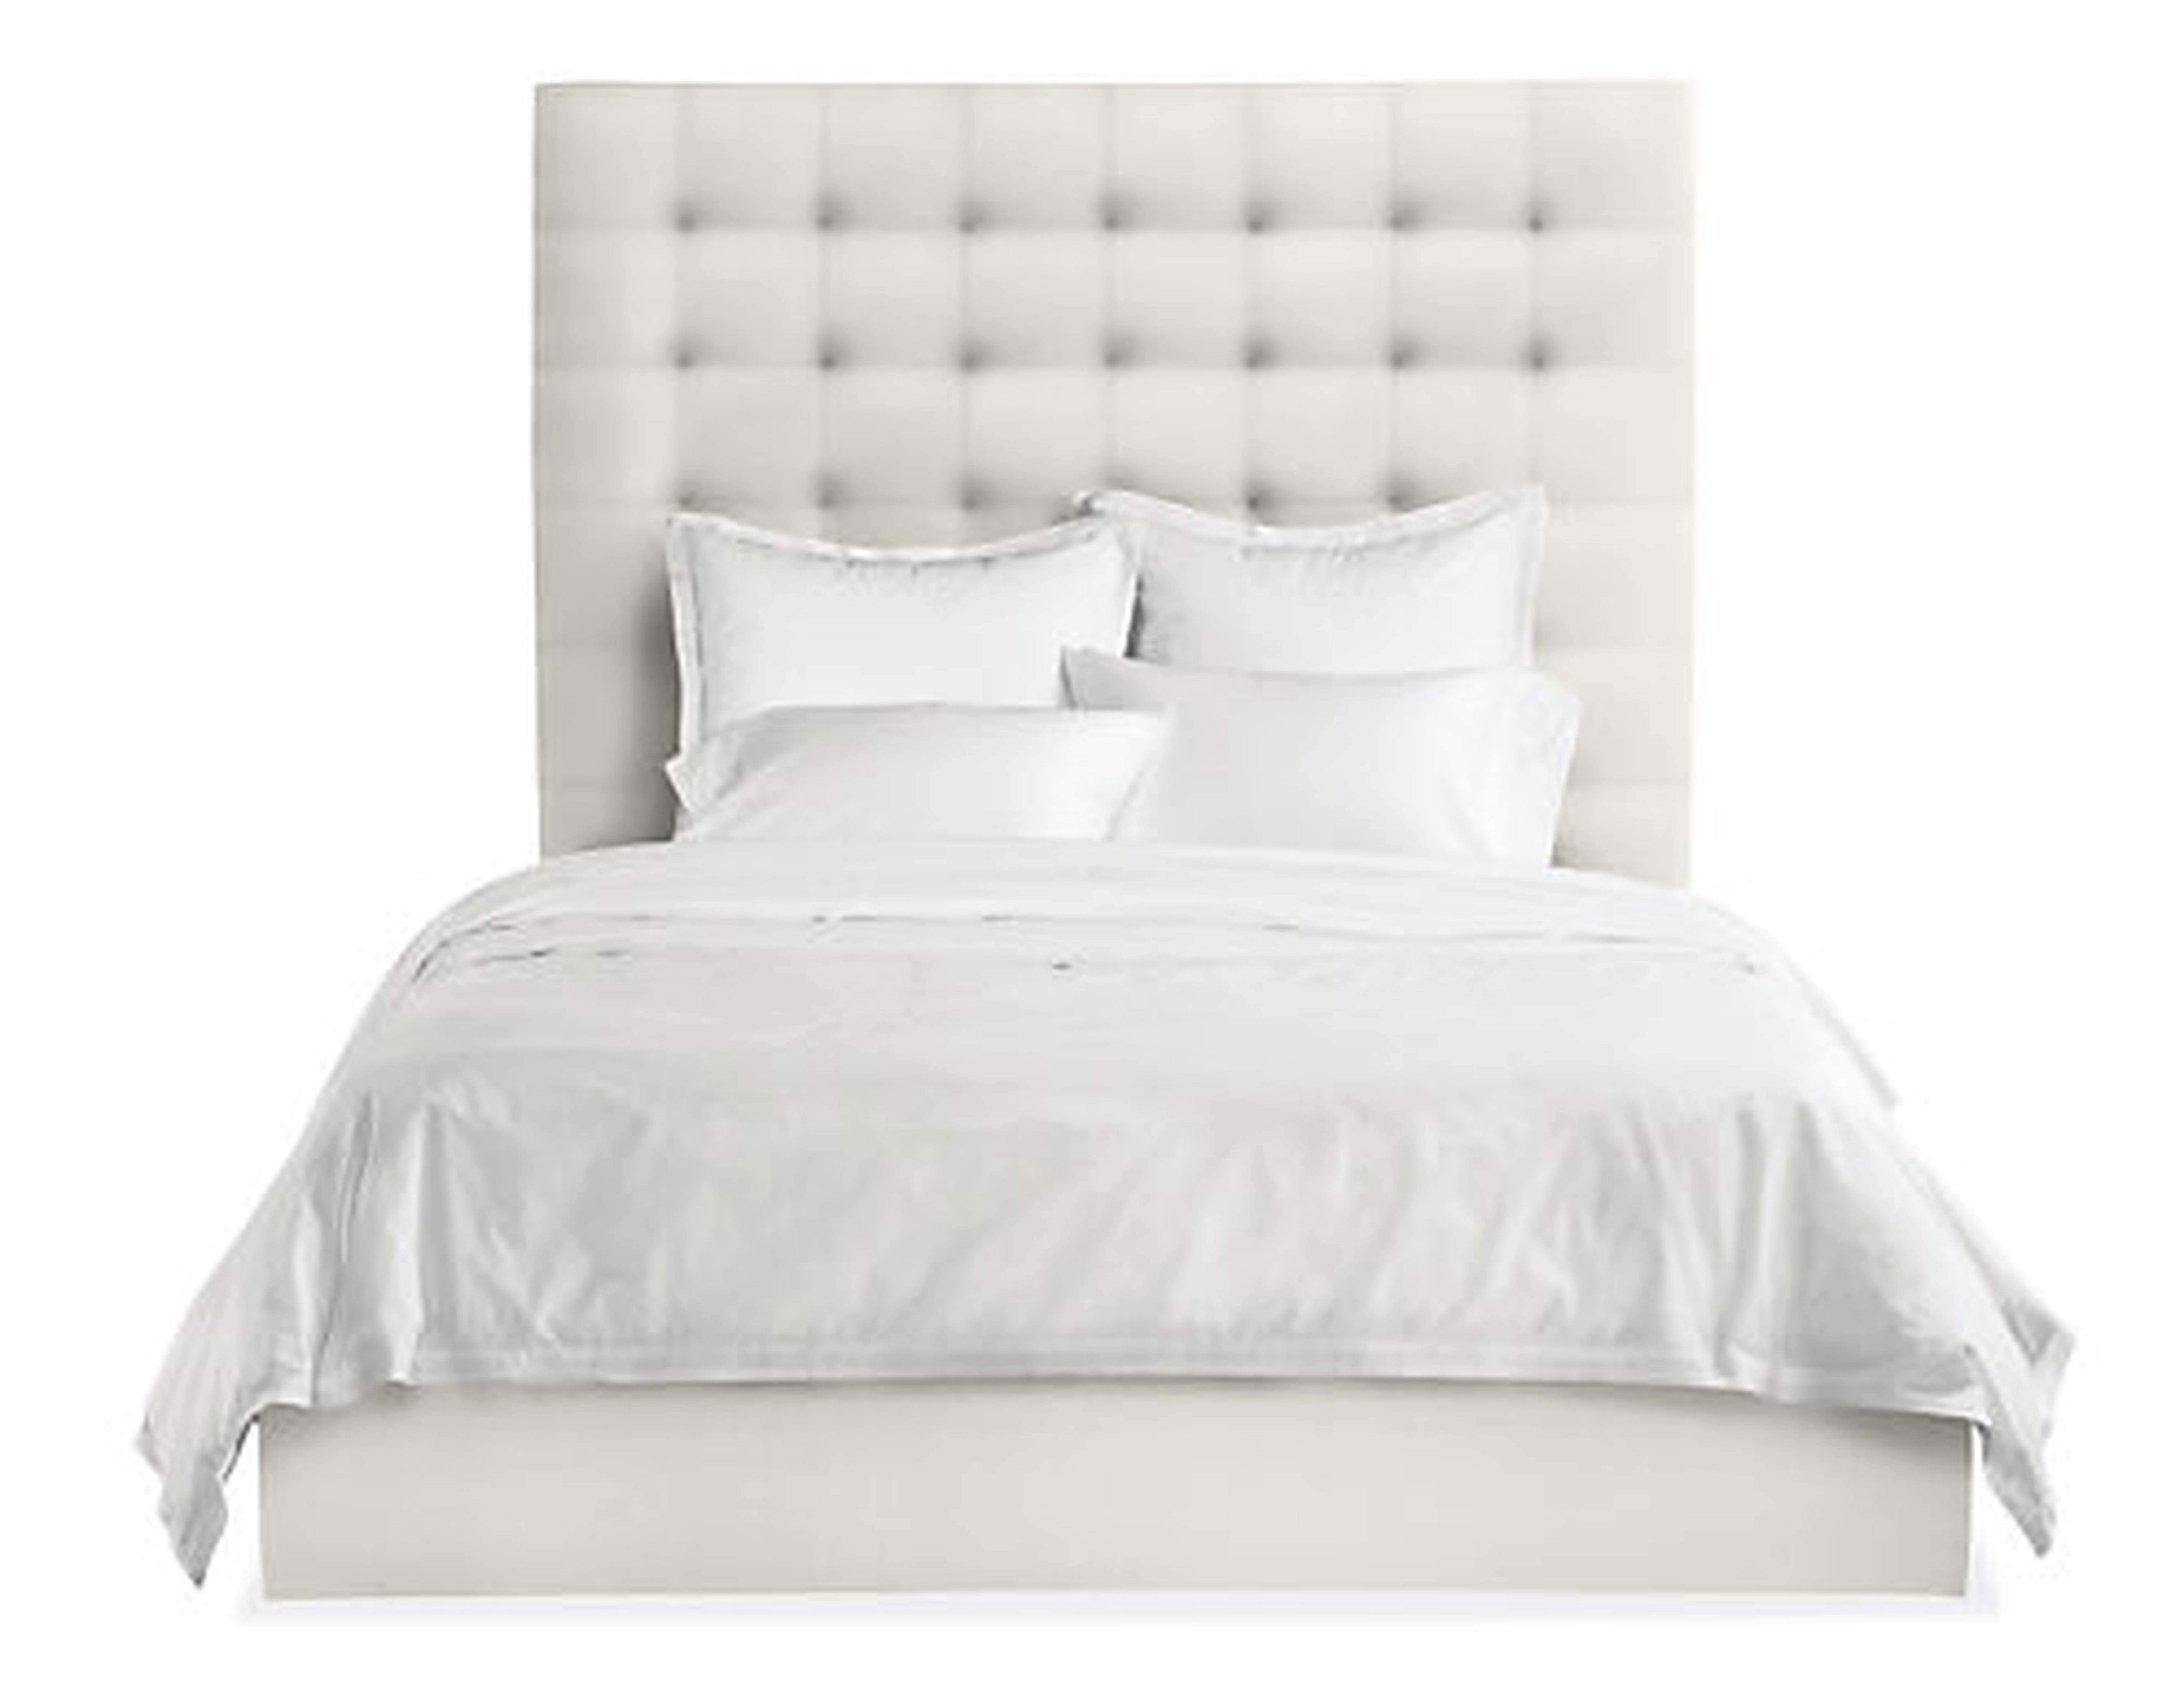 Avery Bed - White Sunbrella - Room & Board